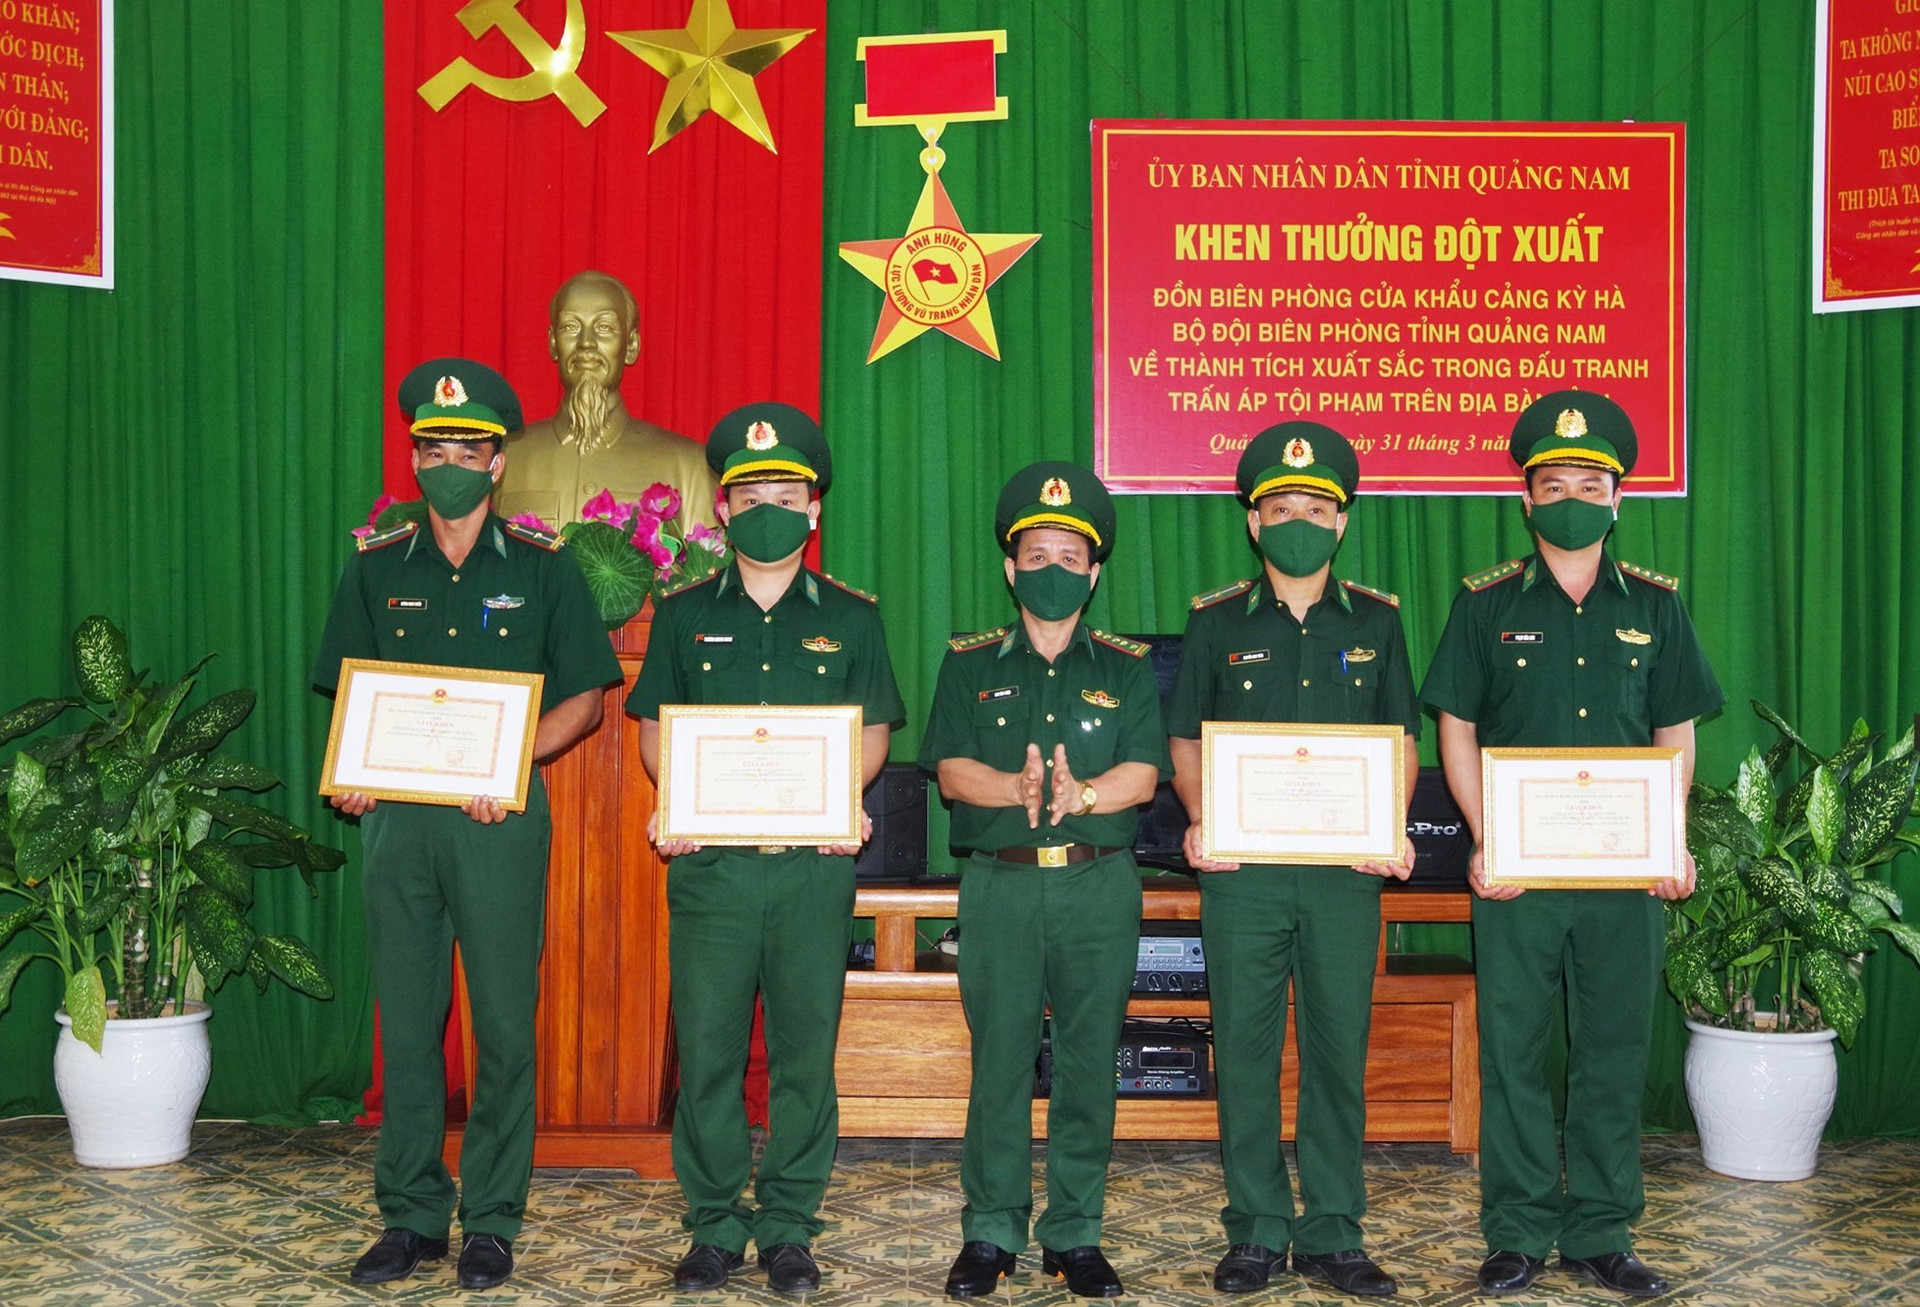 Đại tá Lưu Văn Thiện – Phó Chỉ huy trưởng BĐBP tỉnh trao giấy khen cho tập thể và các cá nhân. Ảnh: HUỲNH CHÍN